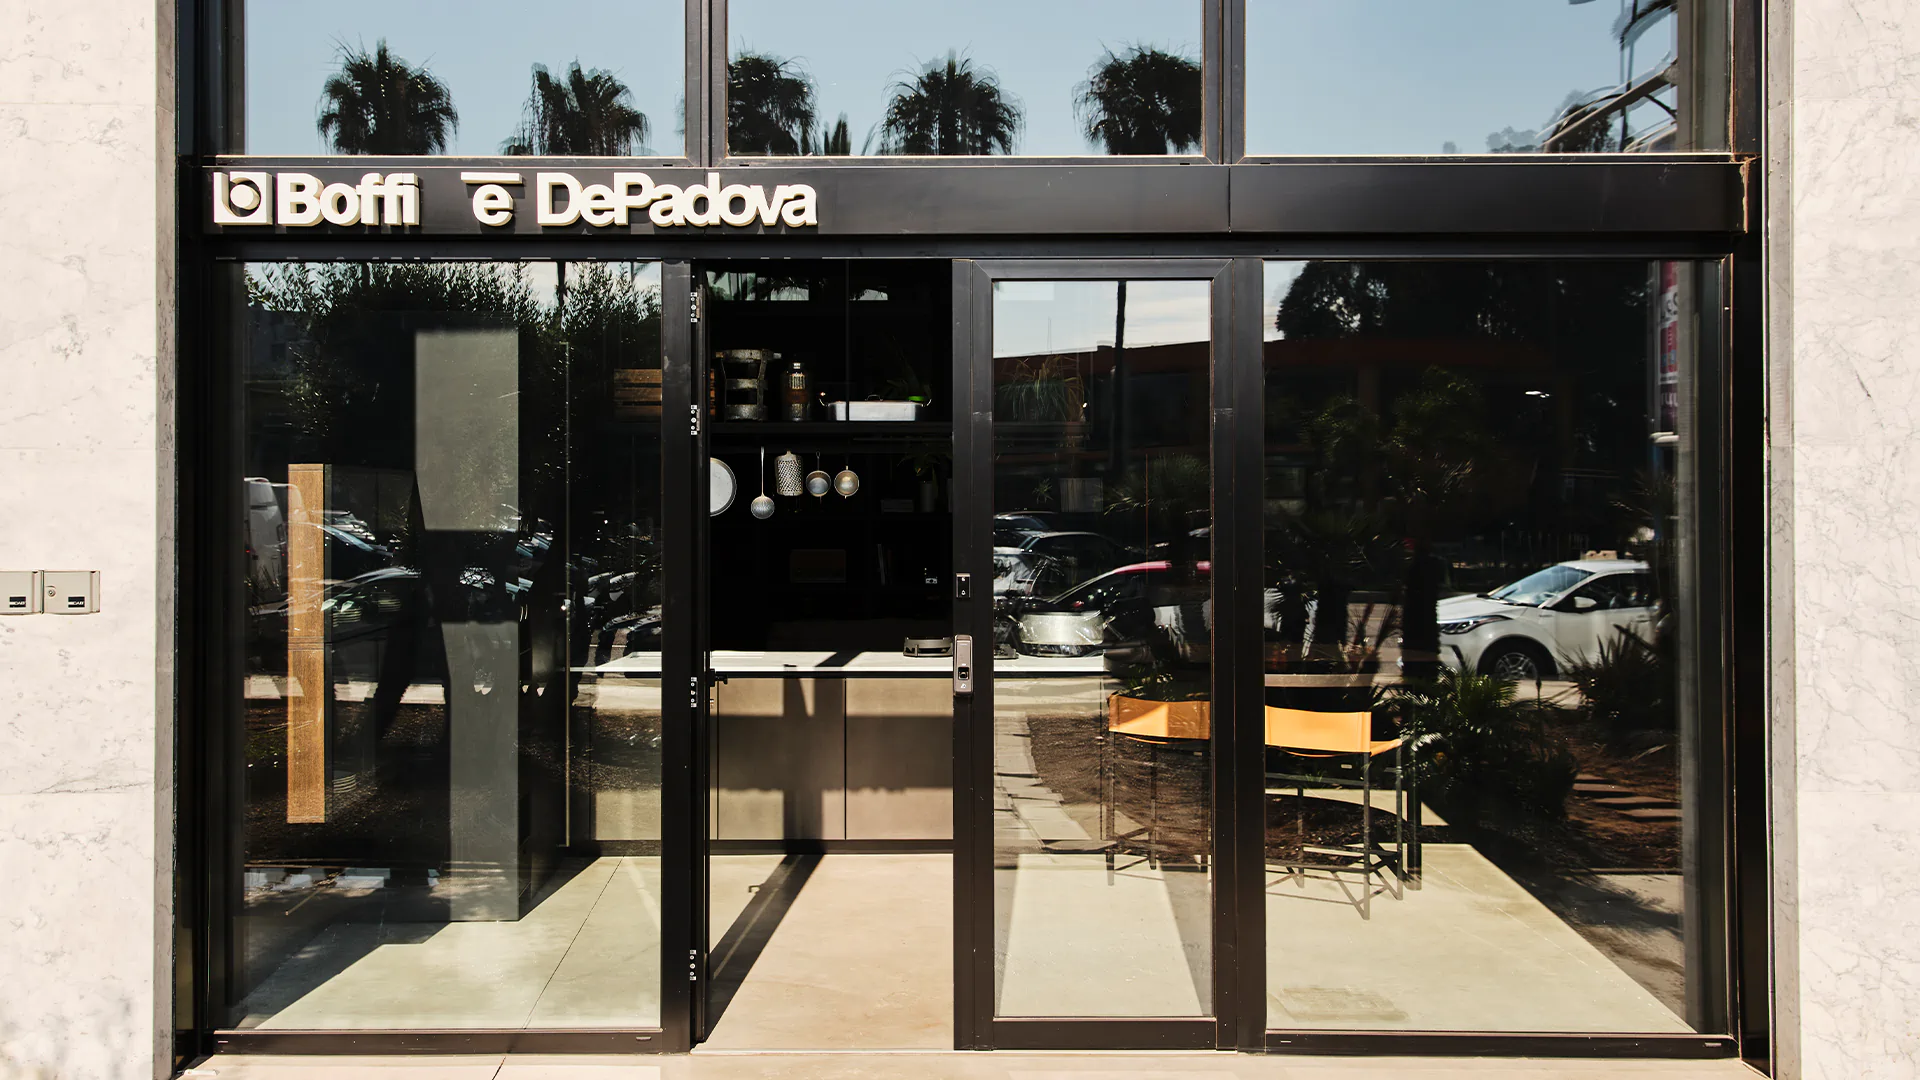 Negozio Boffi|DePadova Studio Casablanca